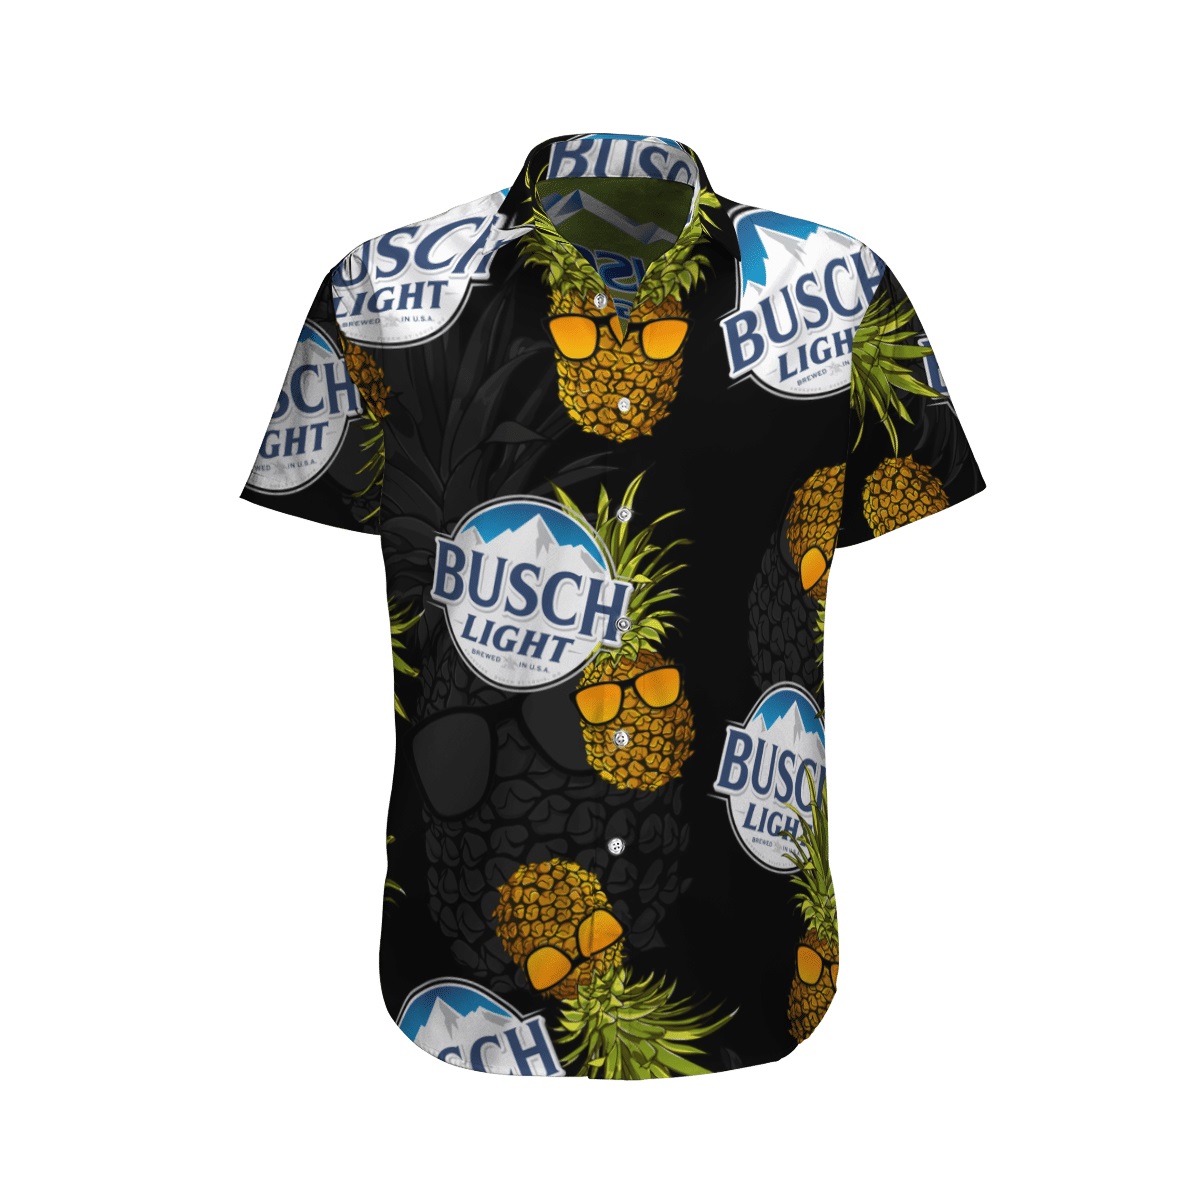 Busch Light pineapple hawaiian shirt